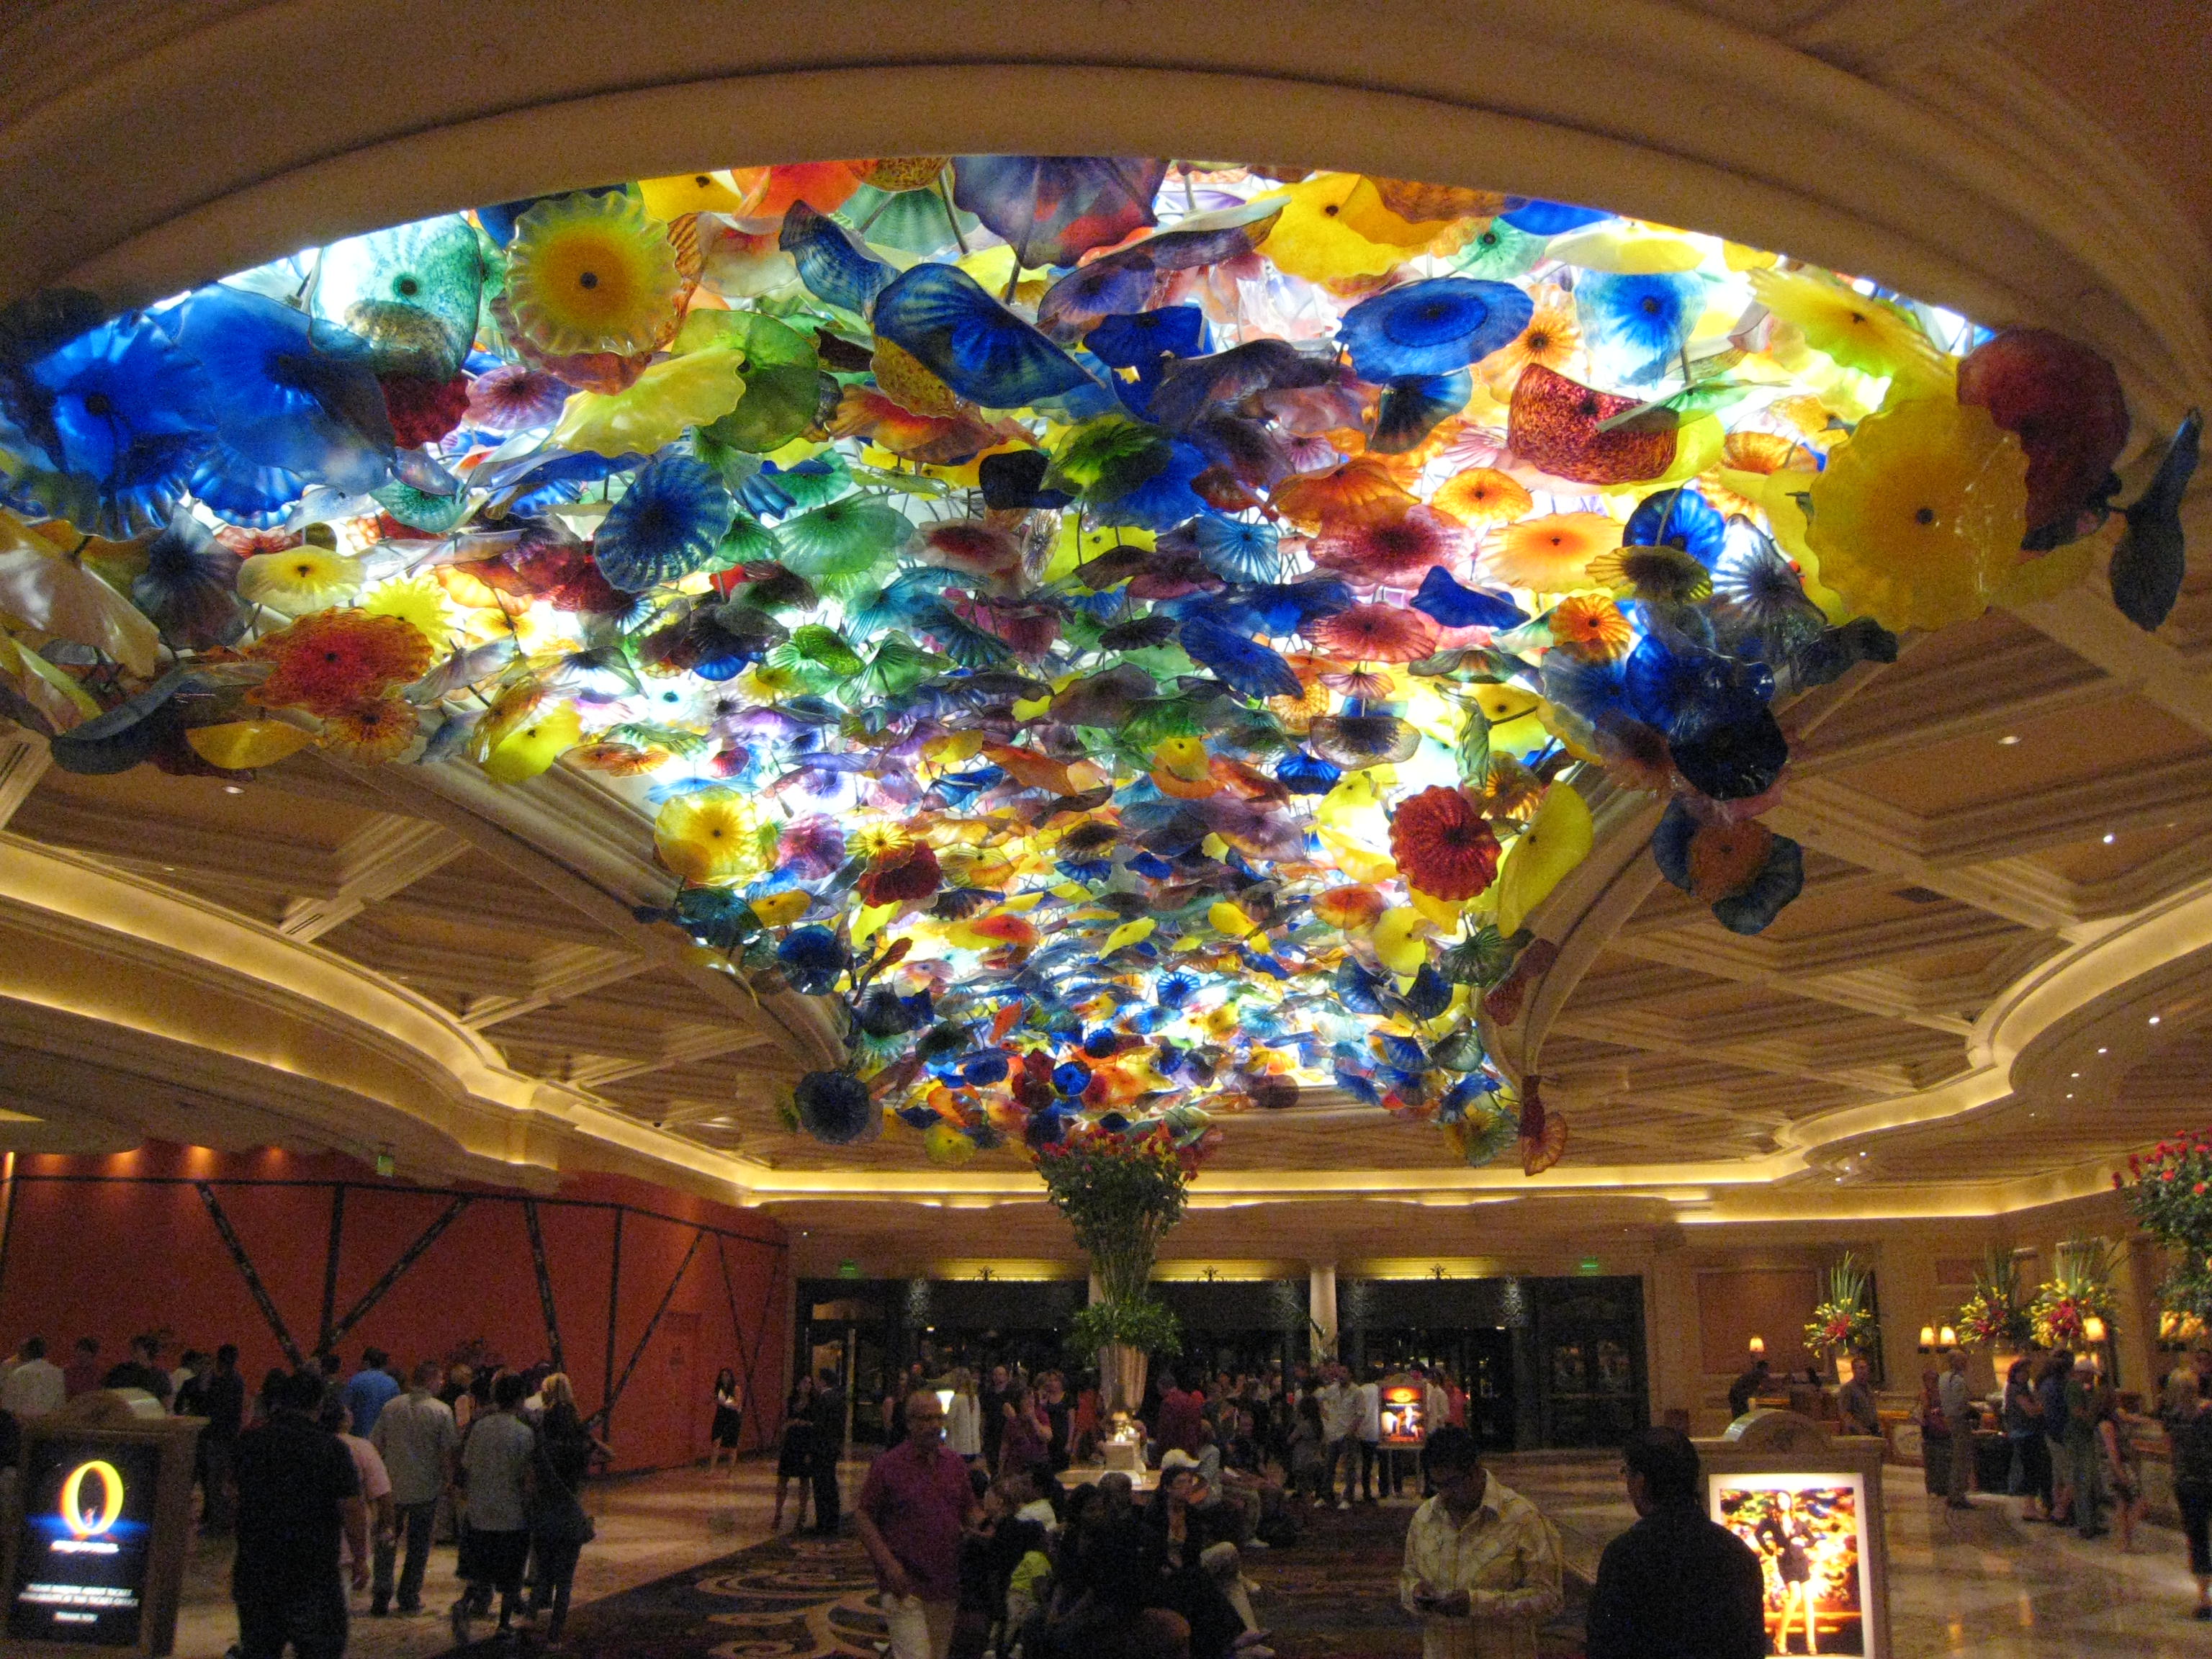 Bellagio lobby ceiling.